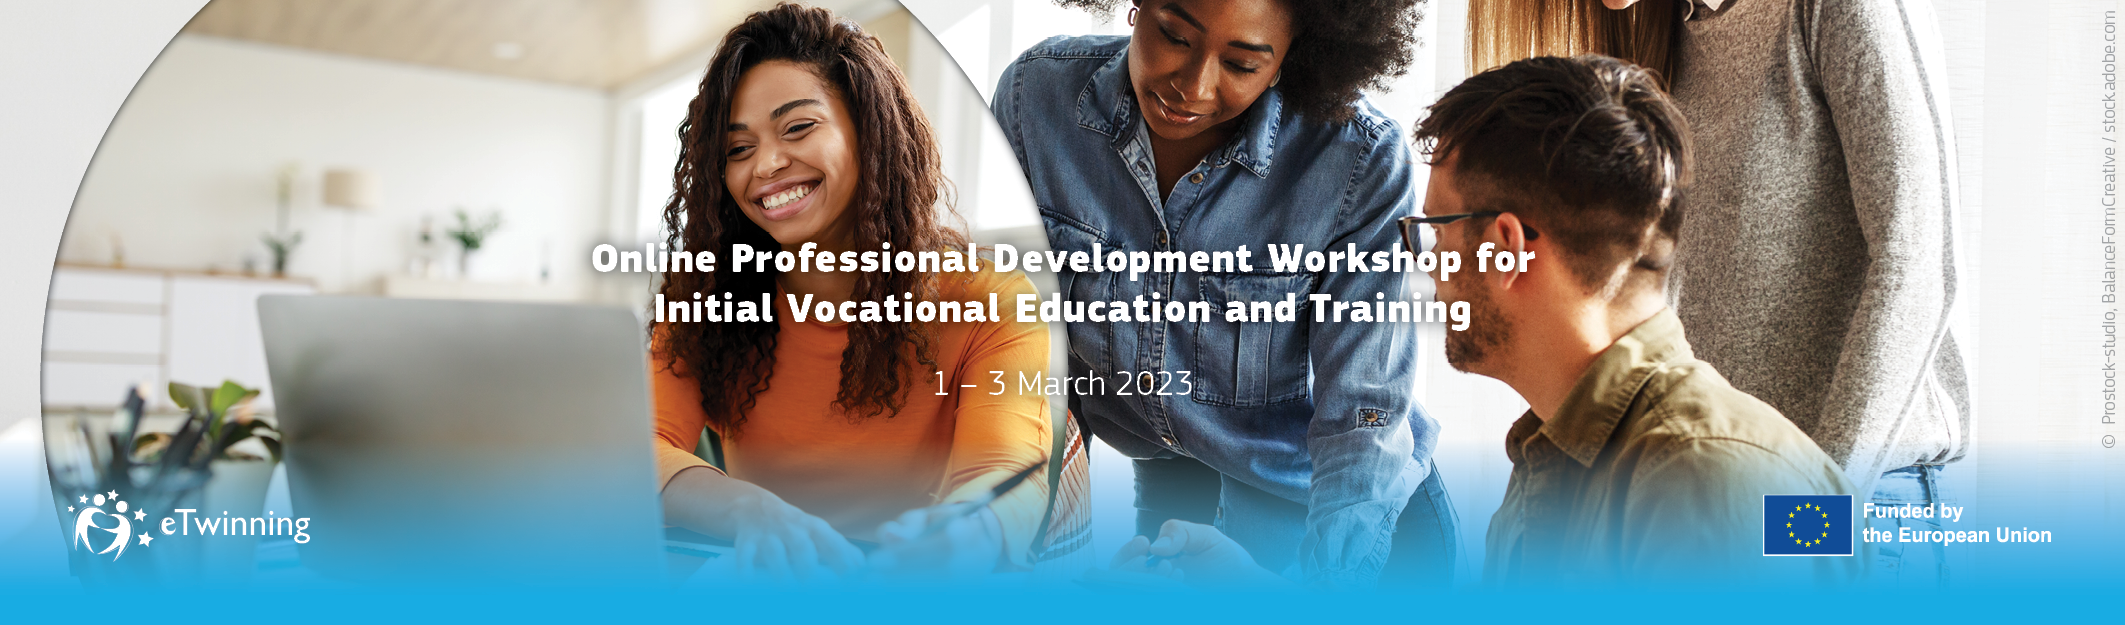 Online Professional Development Workshop for IVET